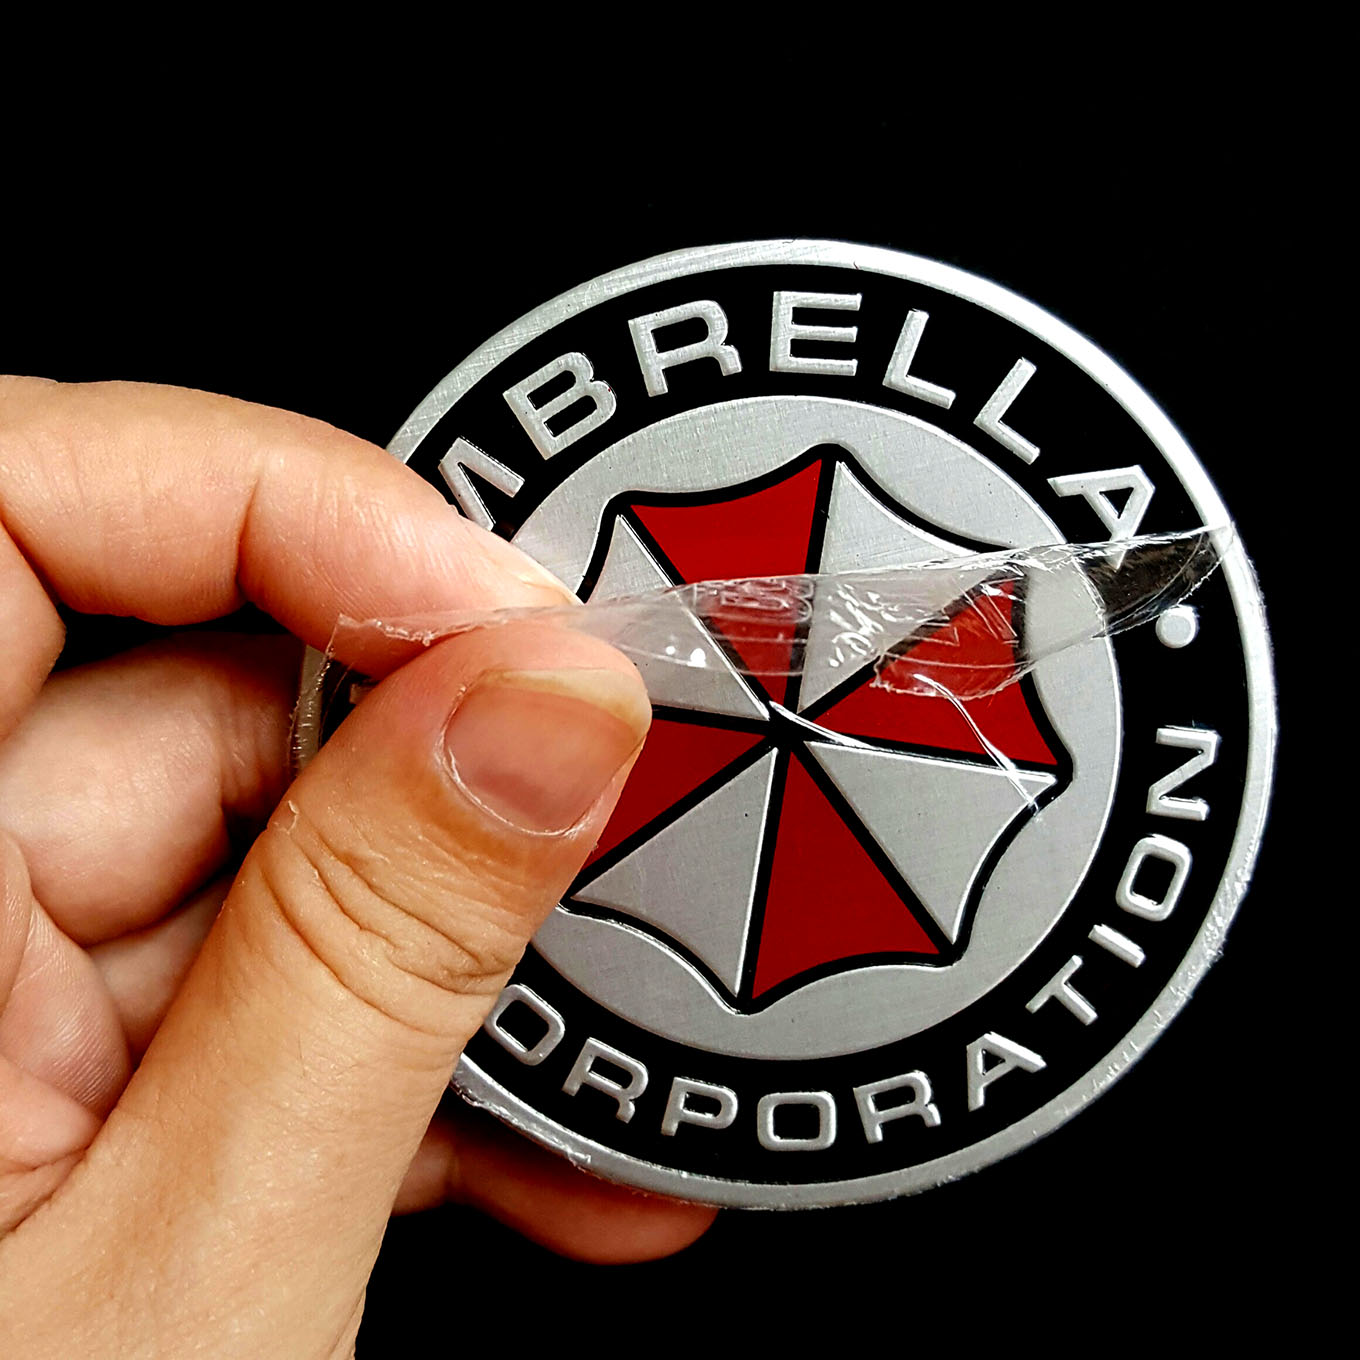 Hình dán kim loại logo UMBRELLA CORPORATION đường kính 7.5cm